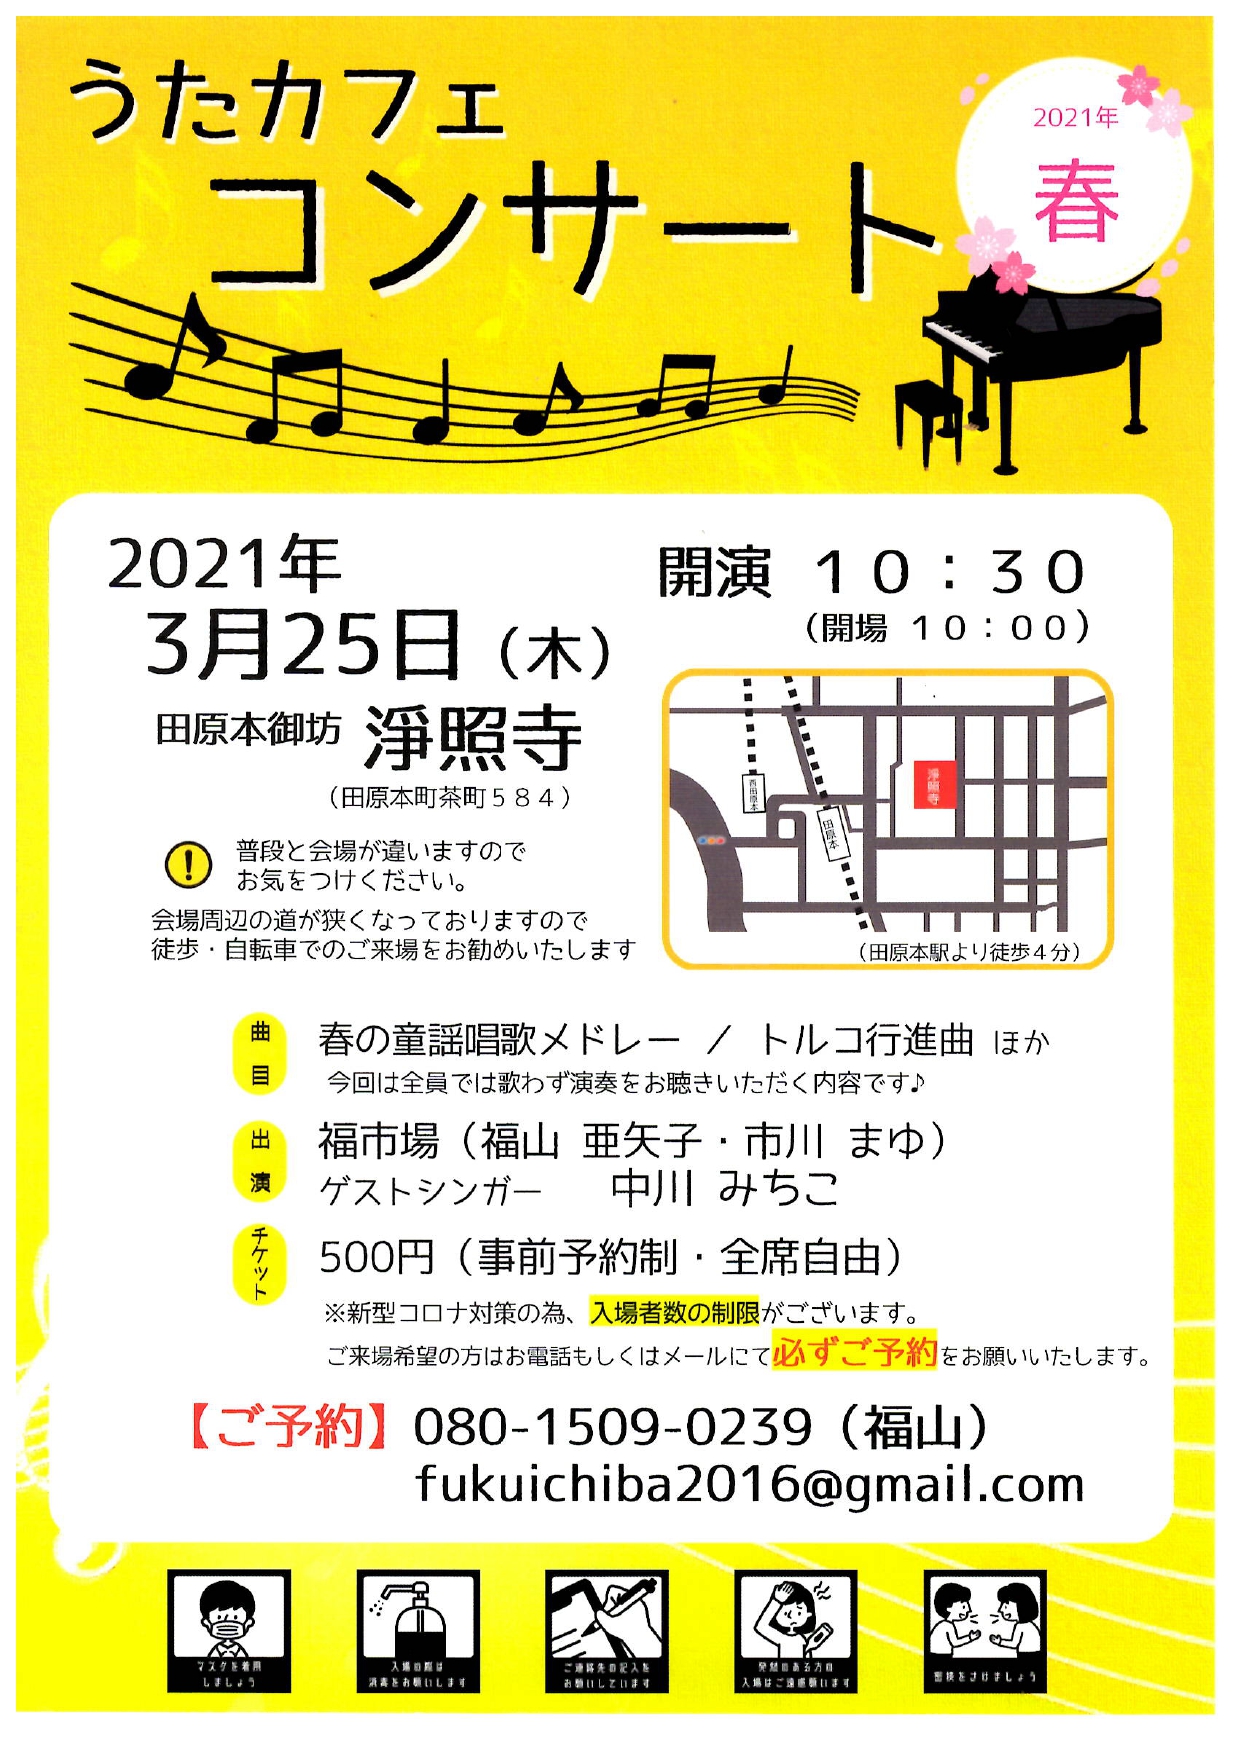 【イベント情報】うたカフェコンサート開催